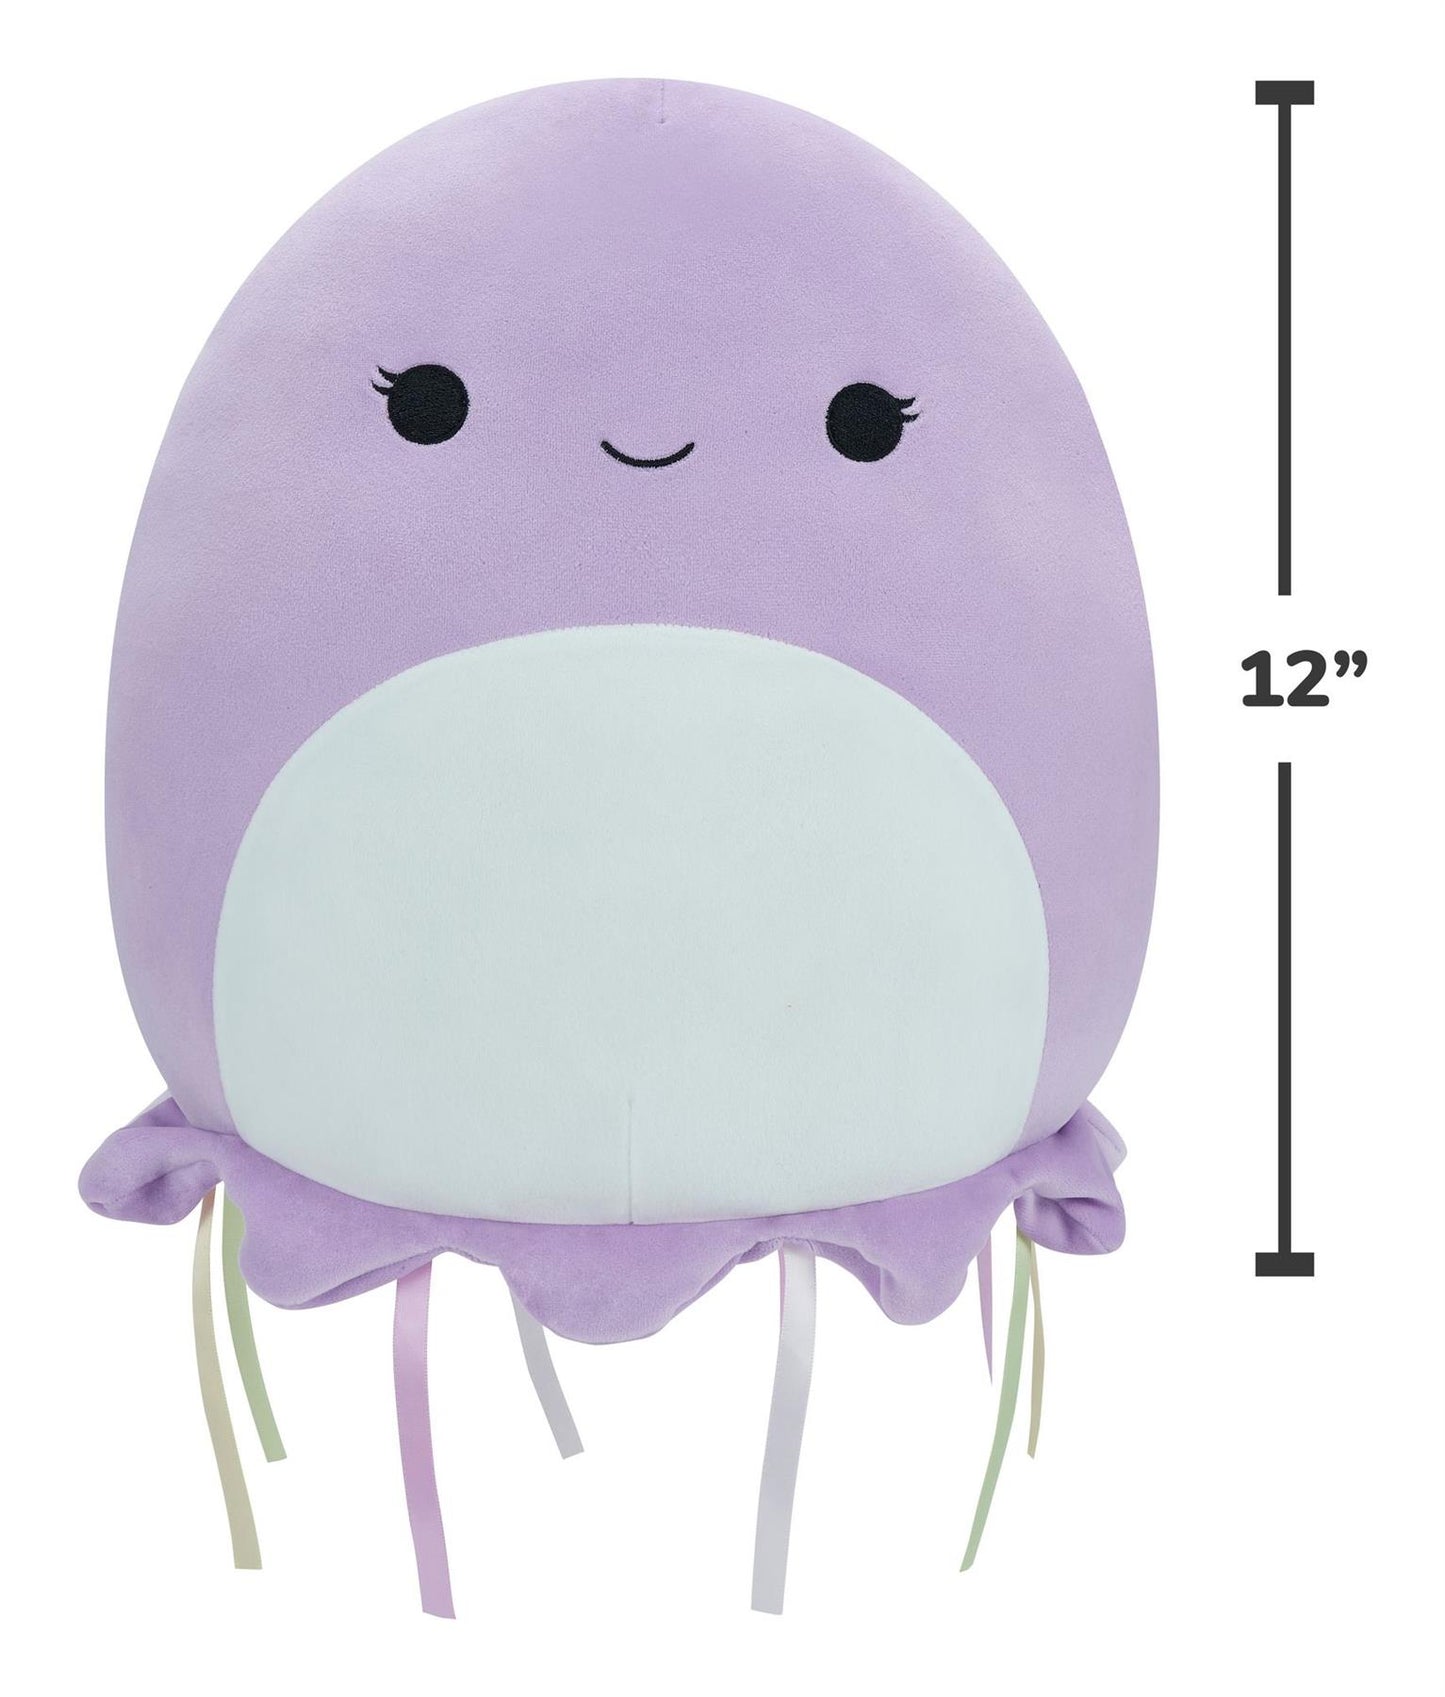 Original Squishmallows Anni the Purple Jellyfish 12in